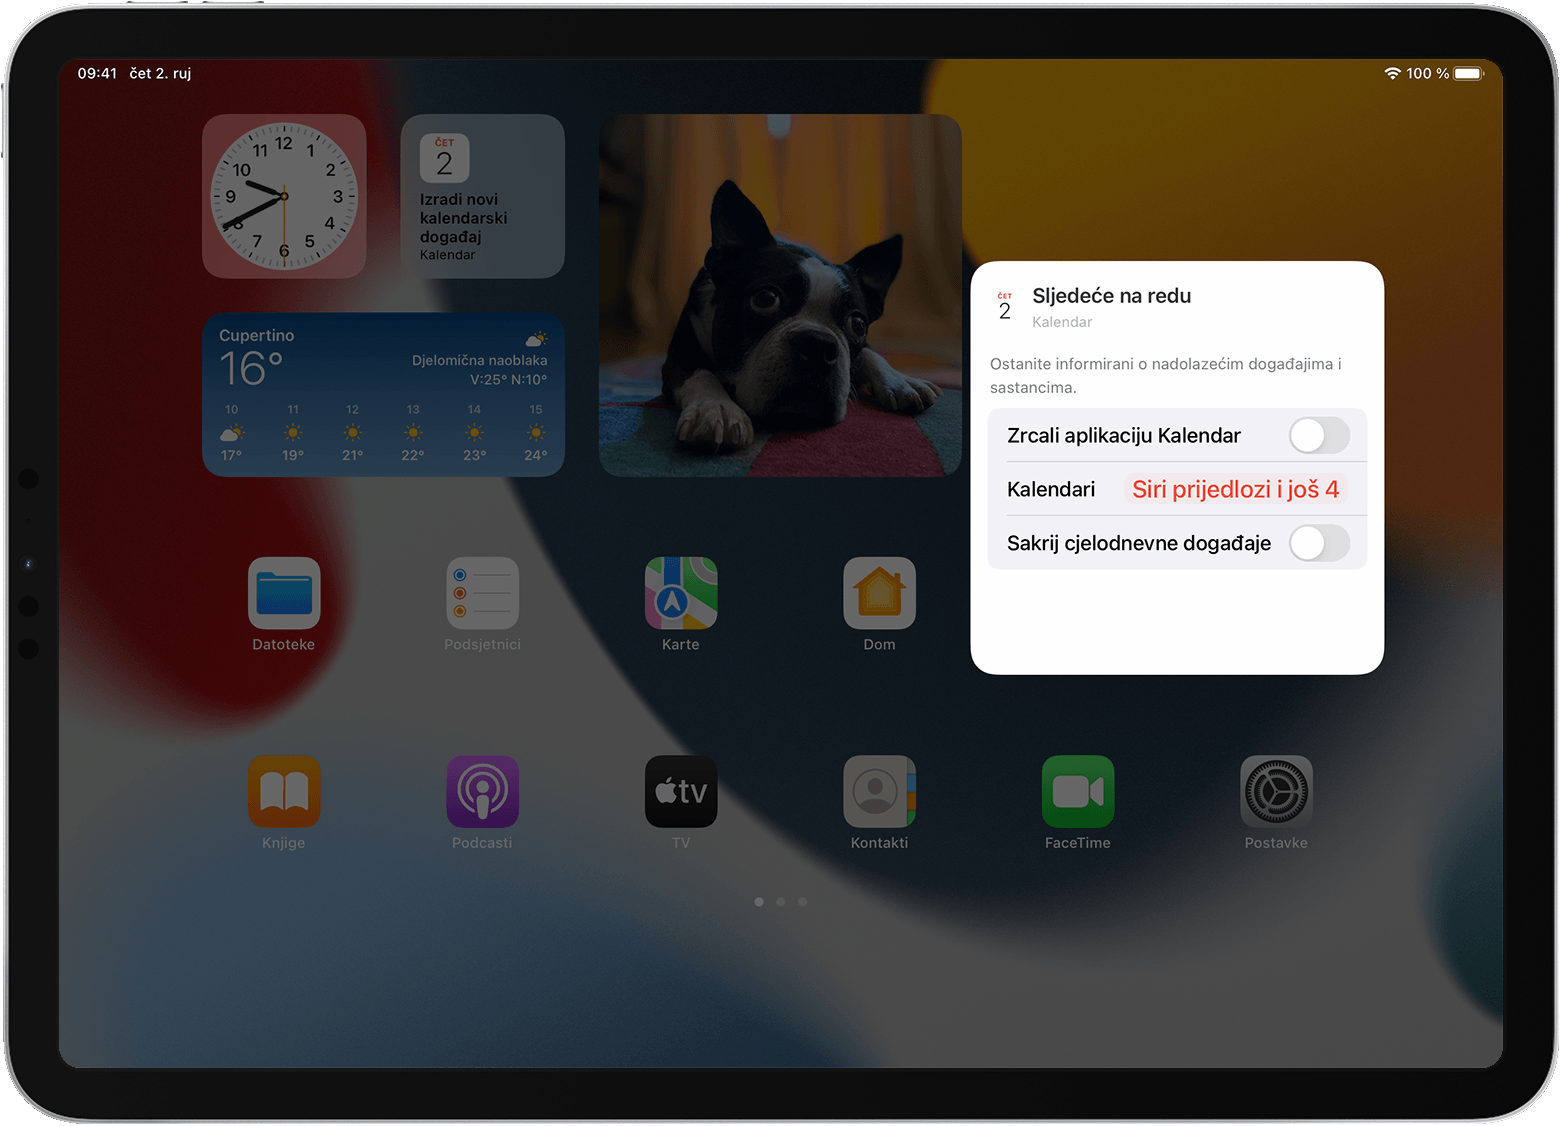 Zaslon iPad uređaja koji prikazuje opcije widgeta Podsjetnici